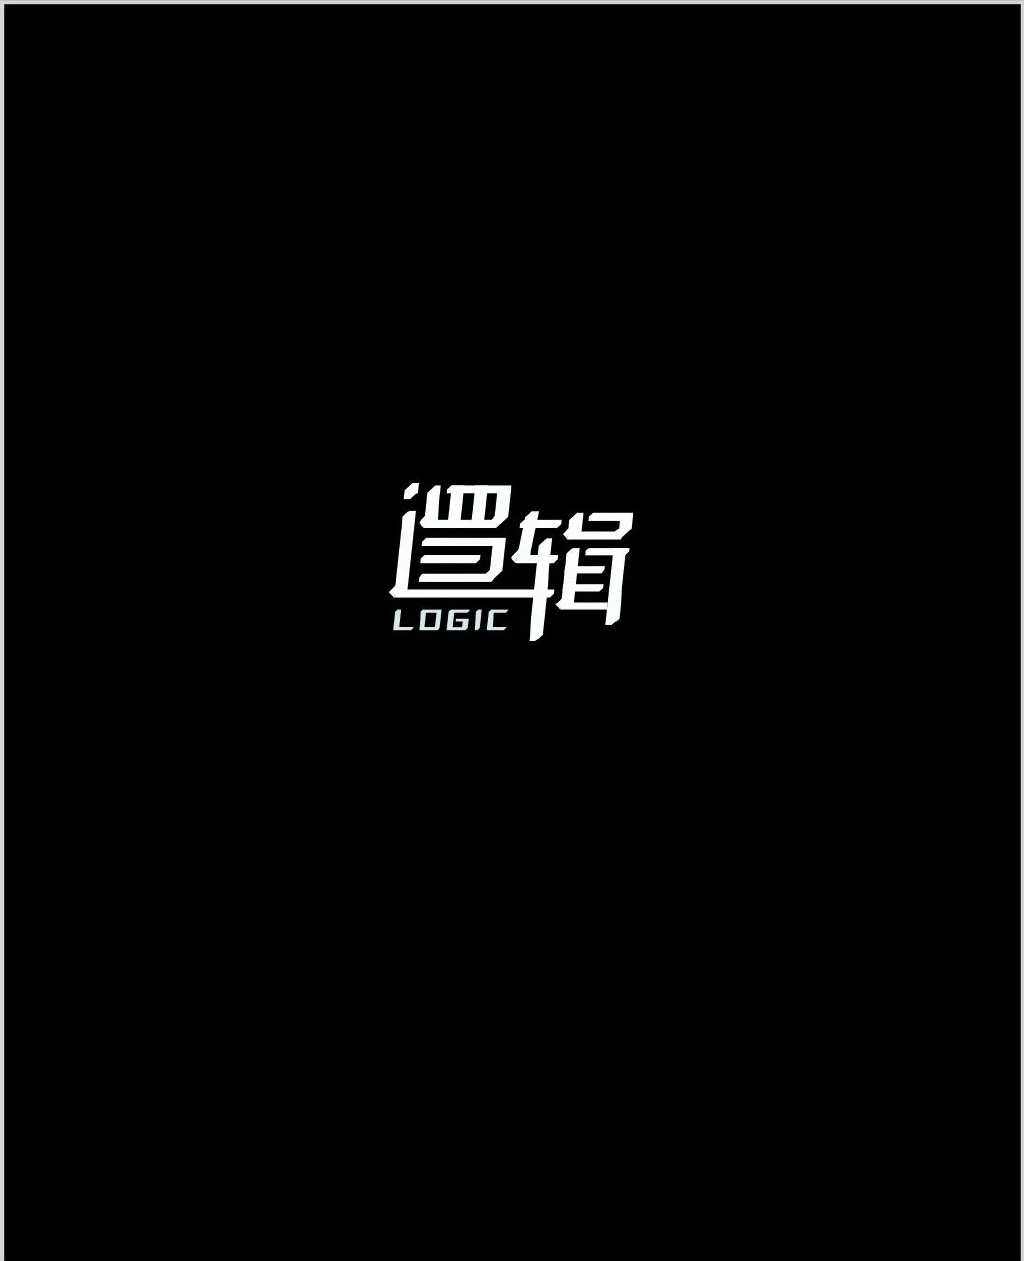 学习平面设计中文字体设计技巧有哪些